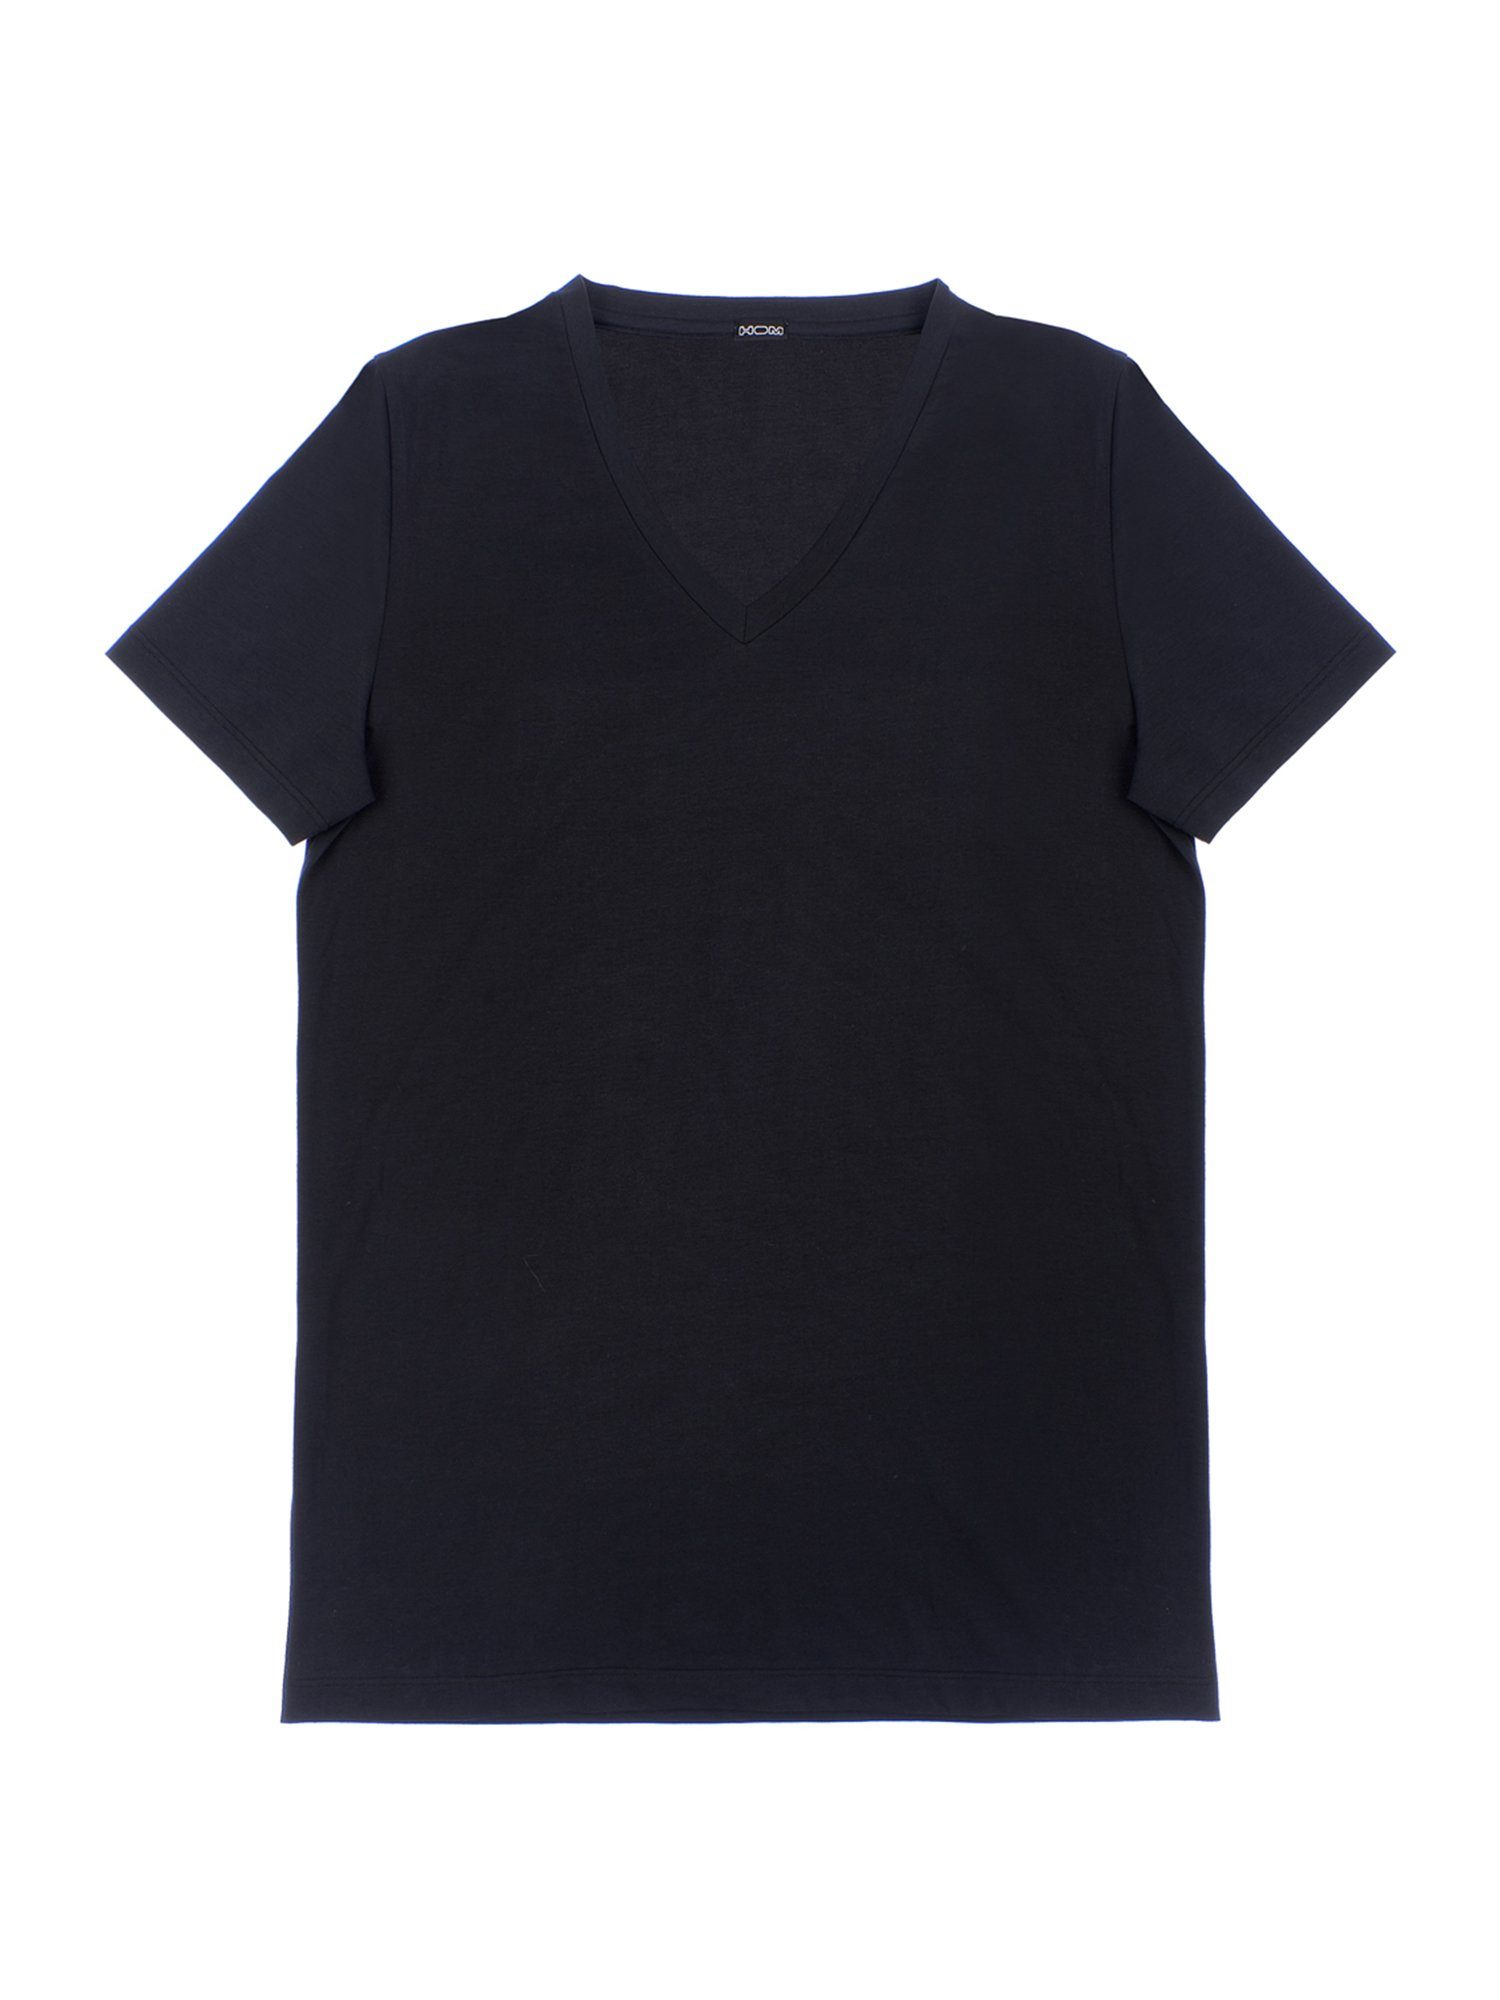 Hom T-Shirt V-Neck Supreme Cotton black